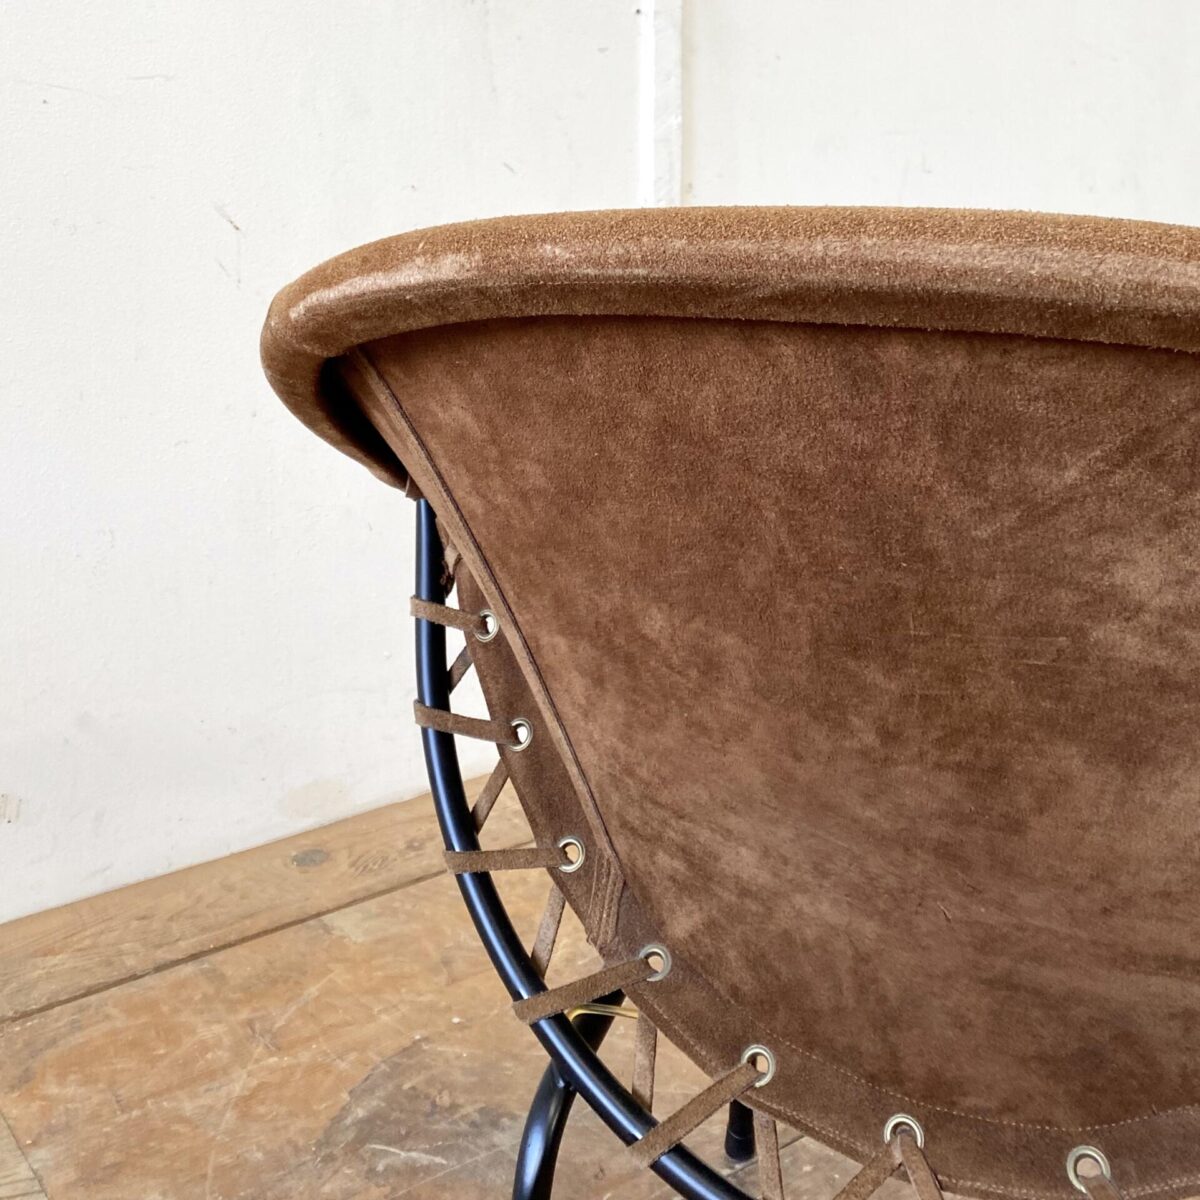 Deuxieme.shop midcentury Easy Chair Ledersessel. Wildleder Sessel von Lusch & Co aus den 60er Jahren. Das Leder instinktiv gutem Zustand, leichte Alterspatina. Die Armlehnen müssten mal neu gewickelt werden. 